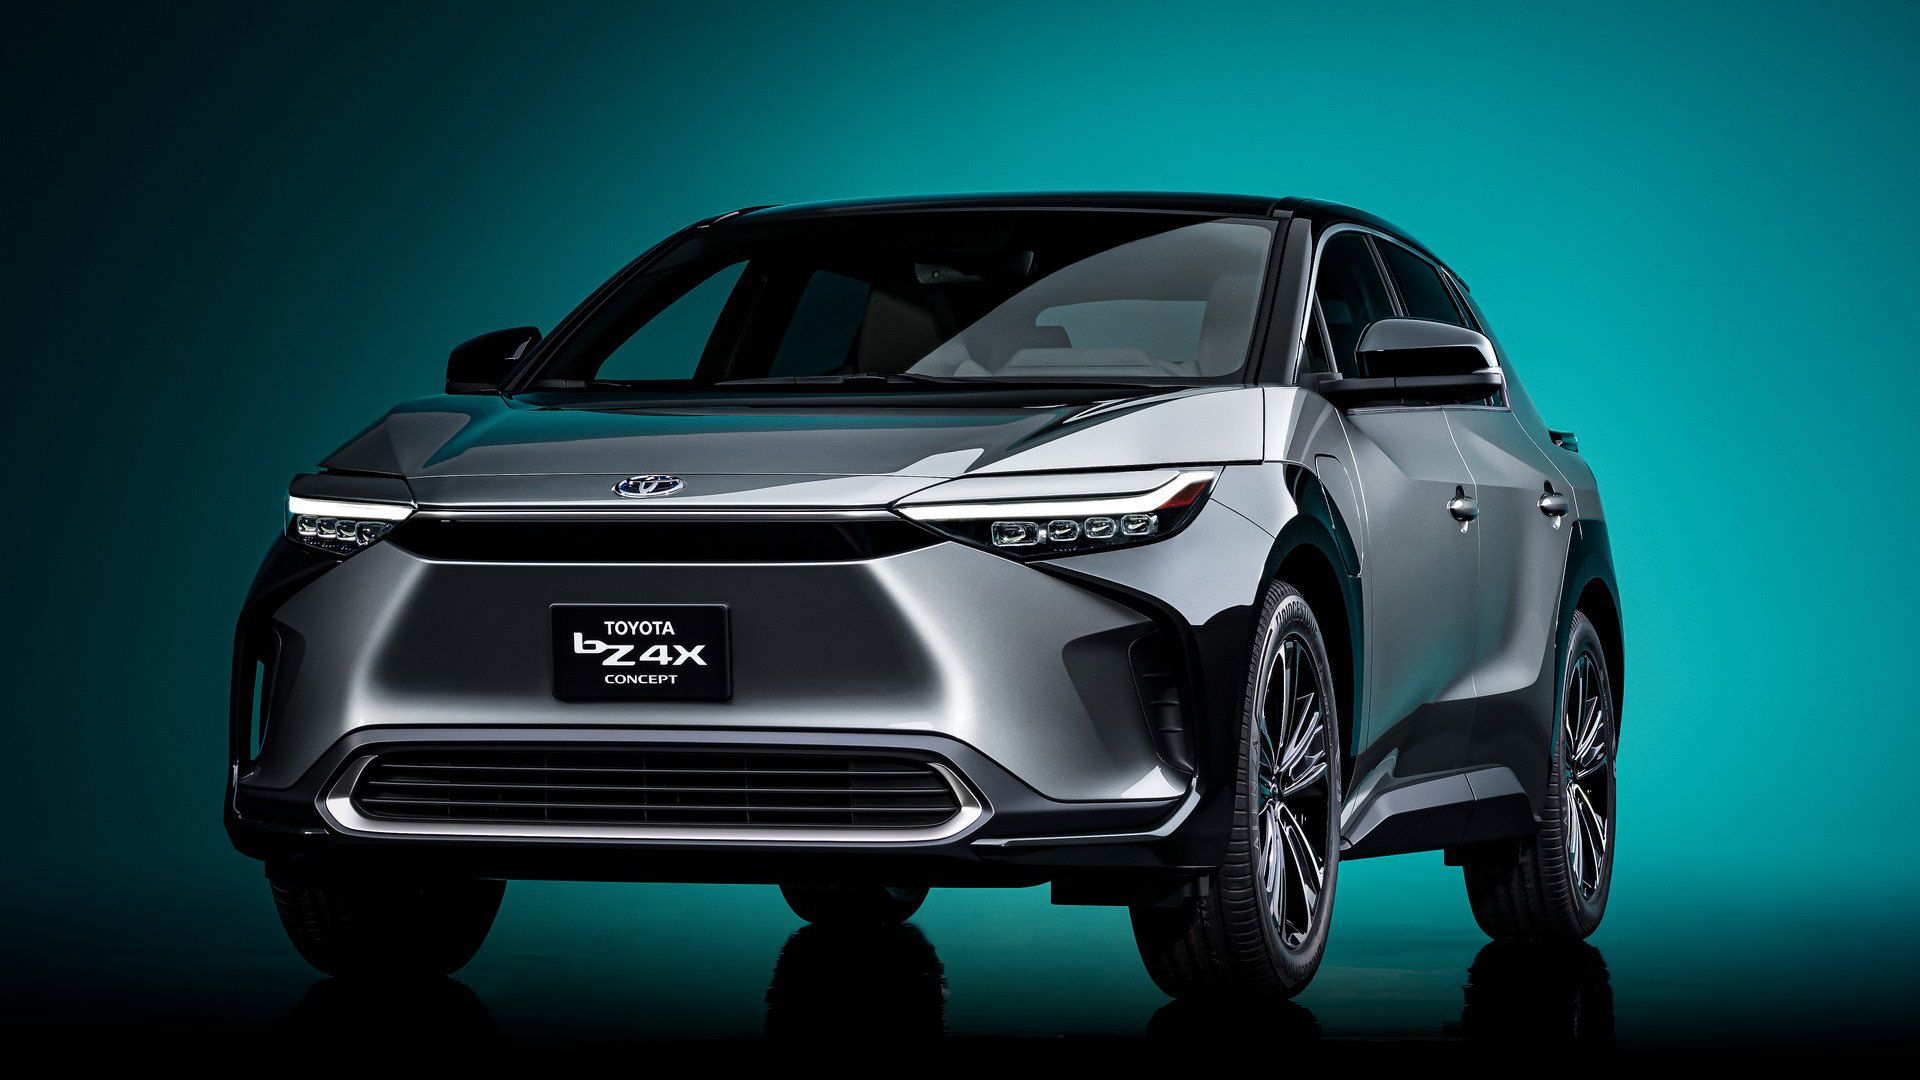 مرجع متخصصين ايران نماي جلو كراس اور مفهومي تويوتا / Toyota bZ4X Concept